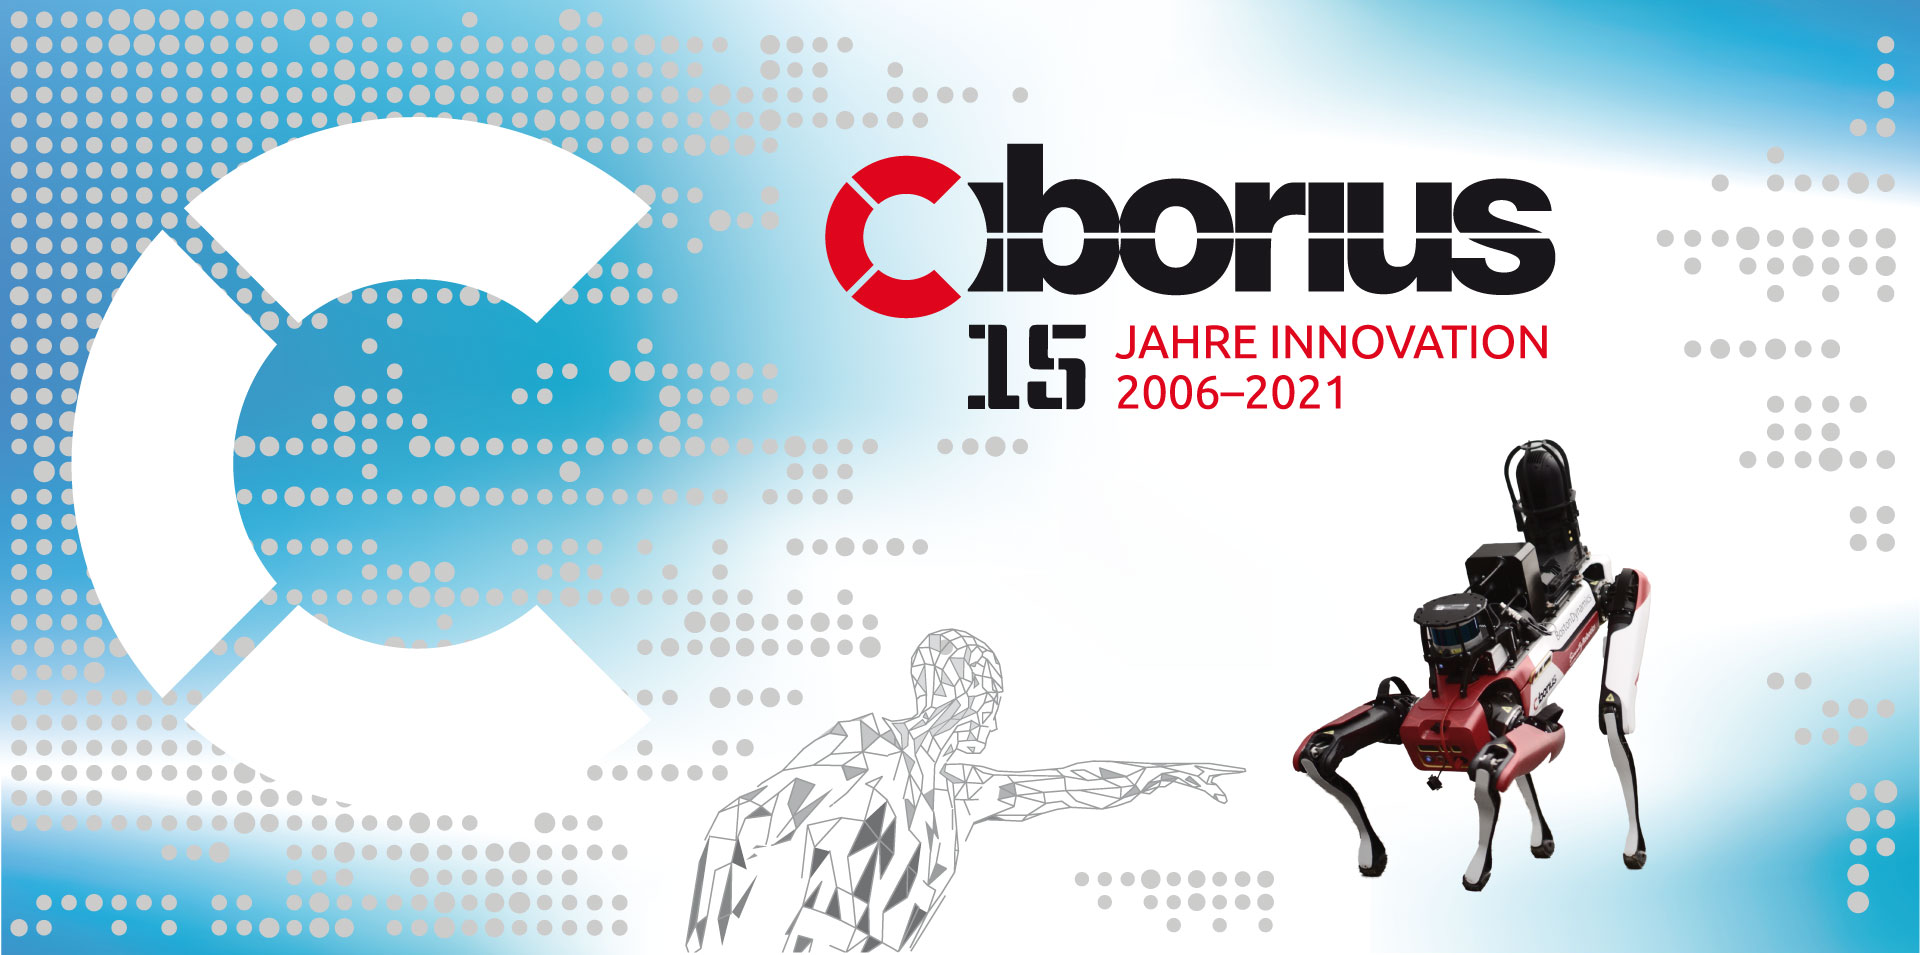 CIBORIUS - 15 Jahre Innovation 2006-2021